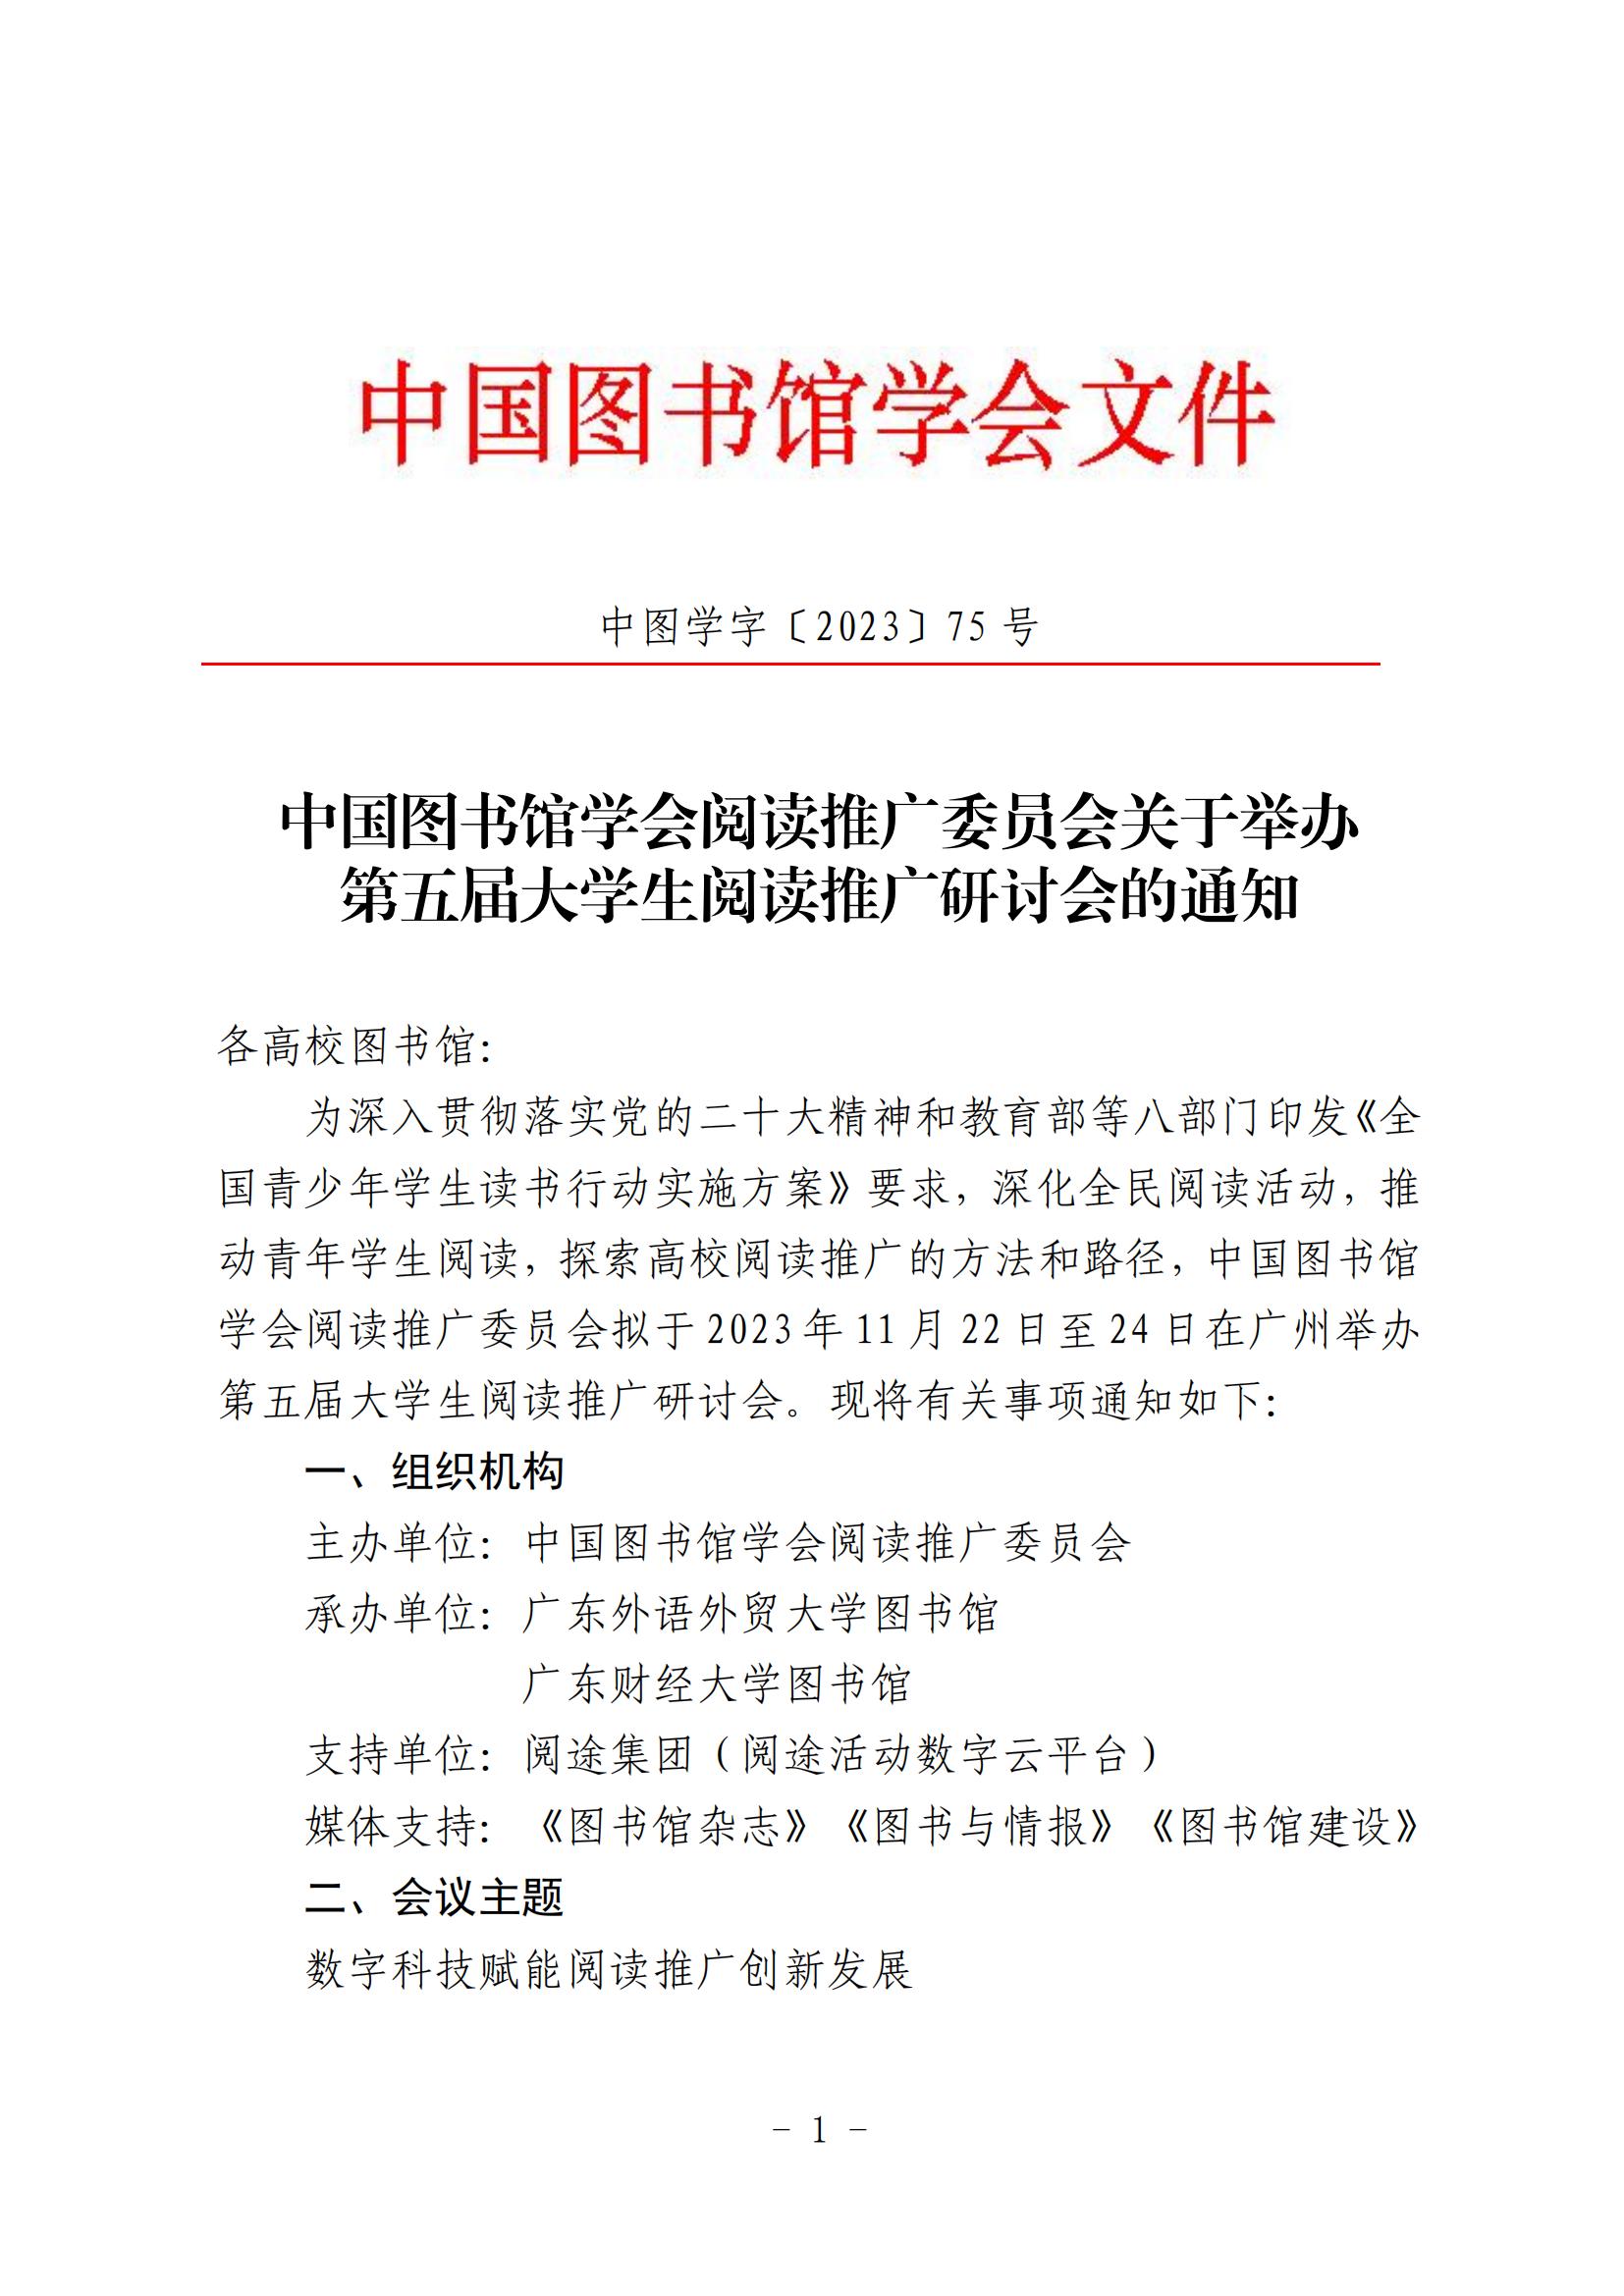 中国图书馆学会阅读推广委员会关于举办第五届大学生阅读推广研讨会的通知